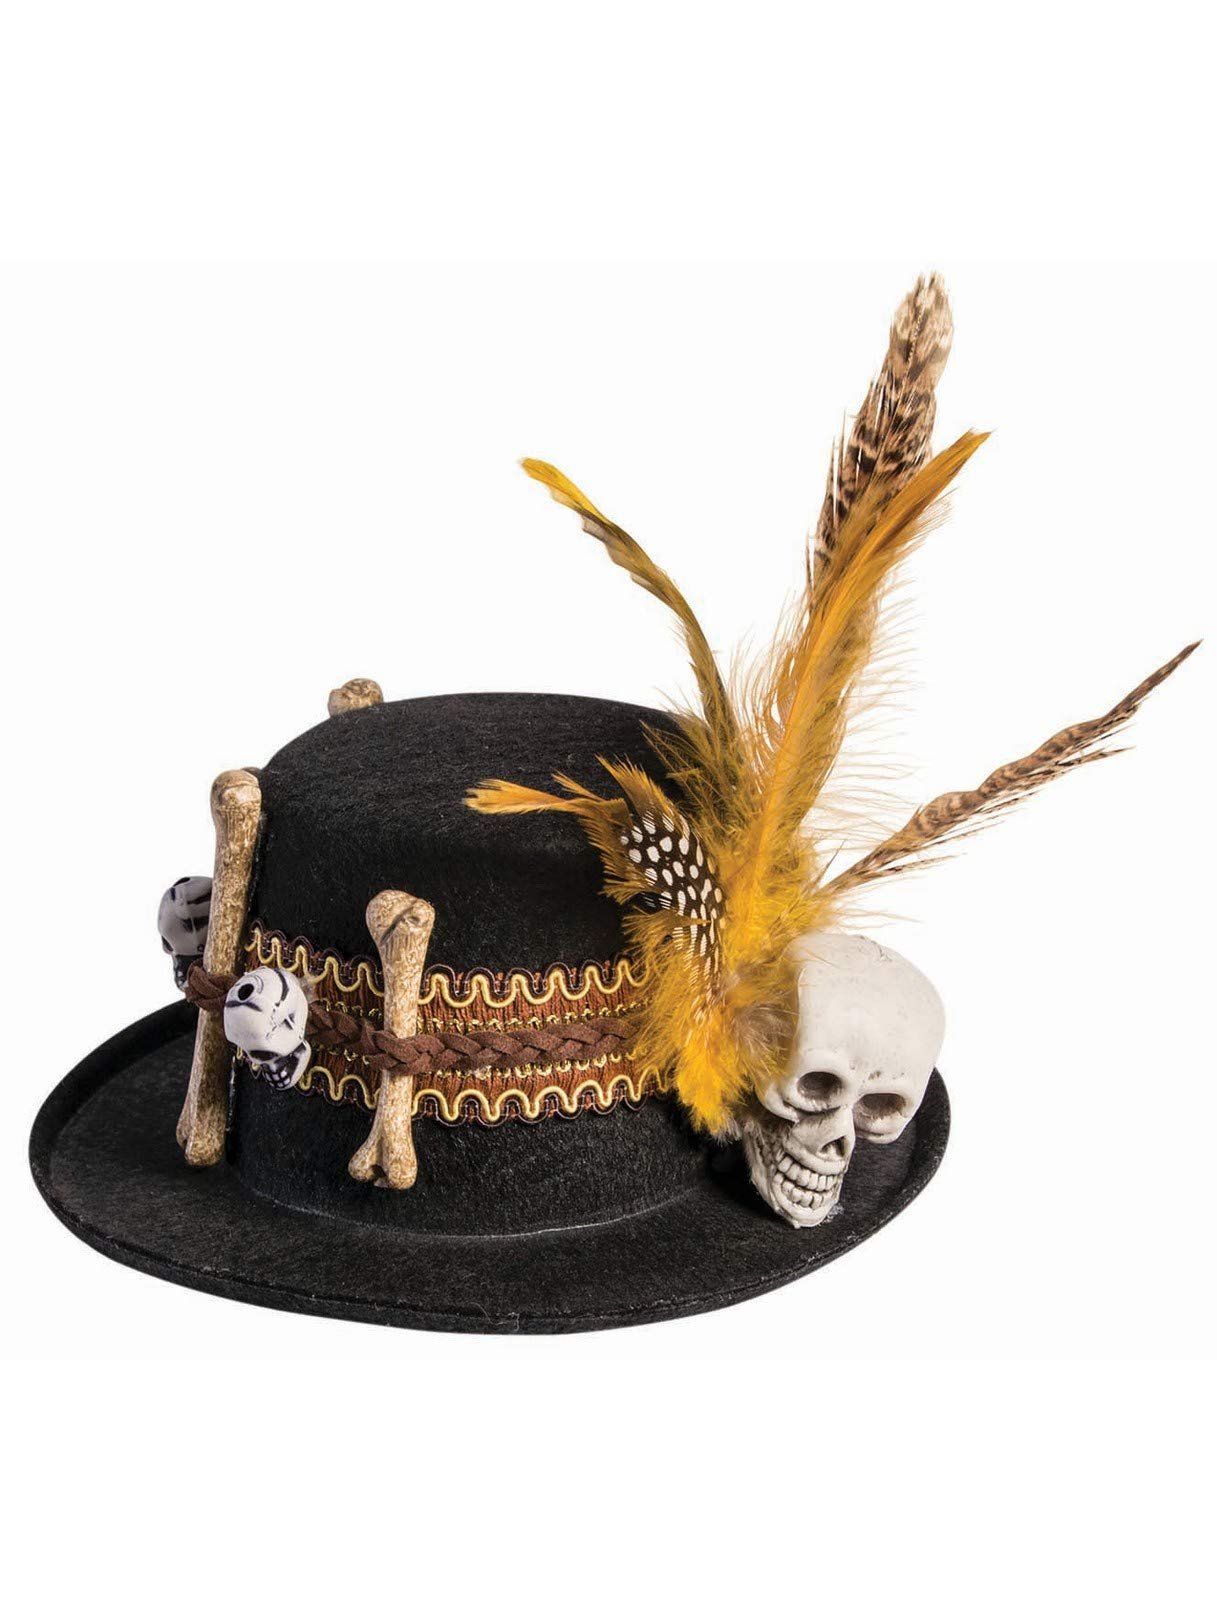 Rubie's Adult Voodoo Mini Hat, As Shown, 4" x 7.5"